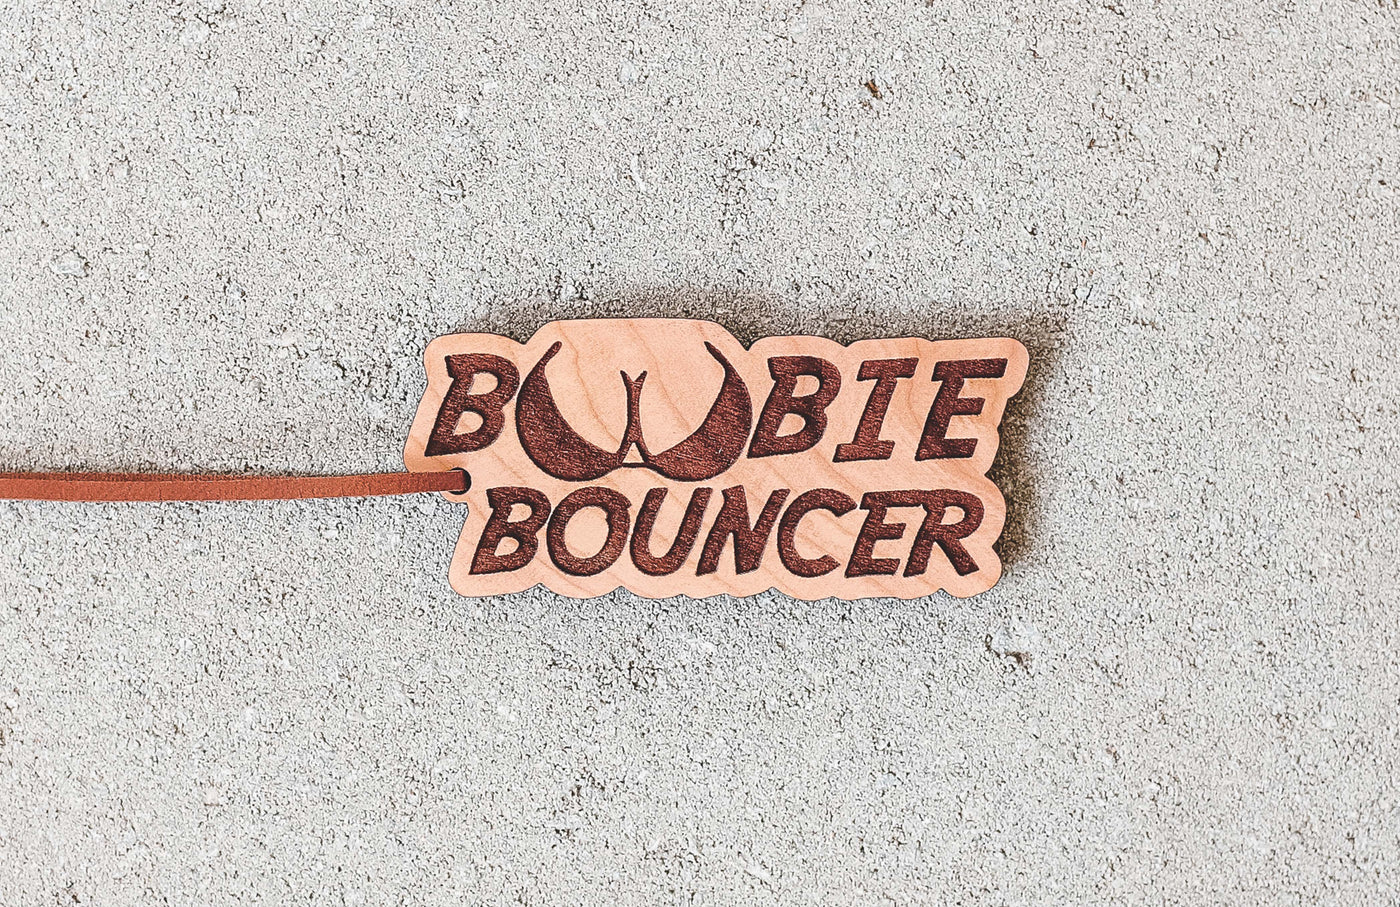 Boobie Bouncer Frshslab